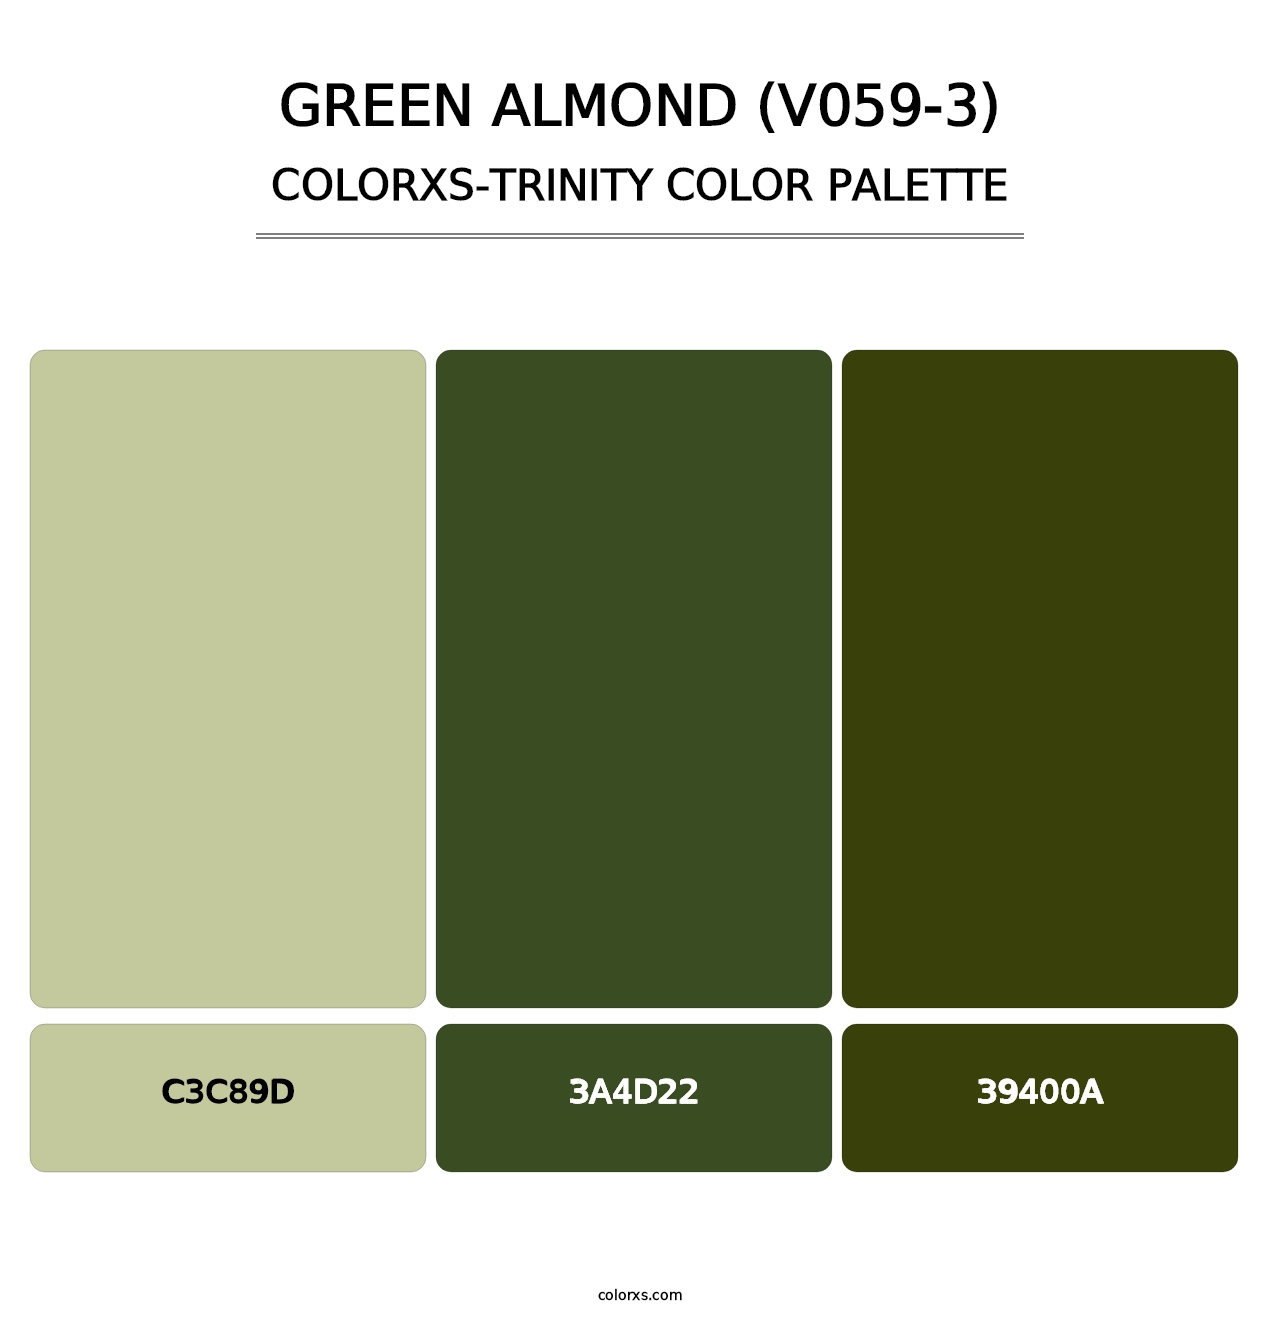 Green Almond (V059-3) - Colorxs Trinity Palette